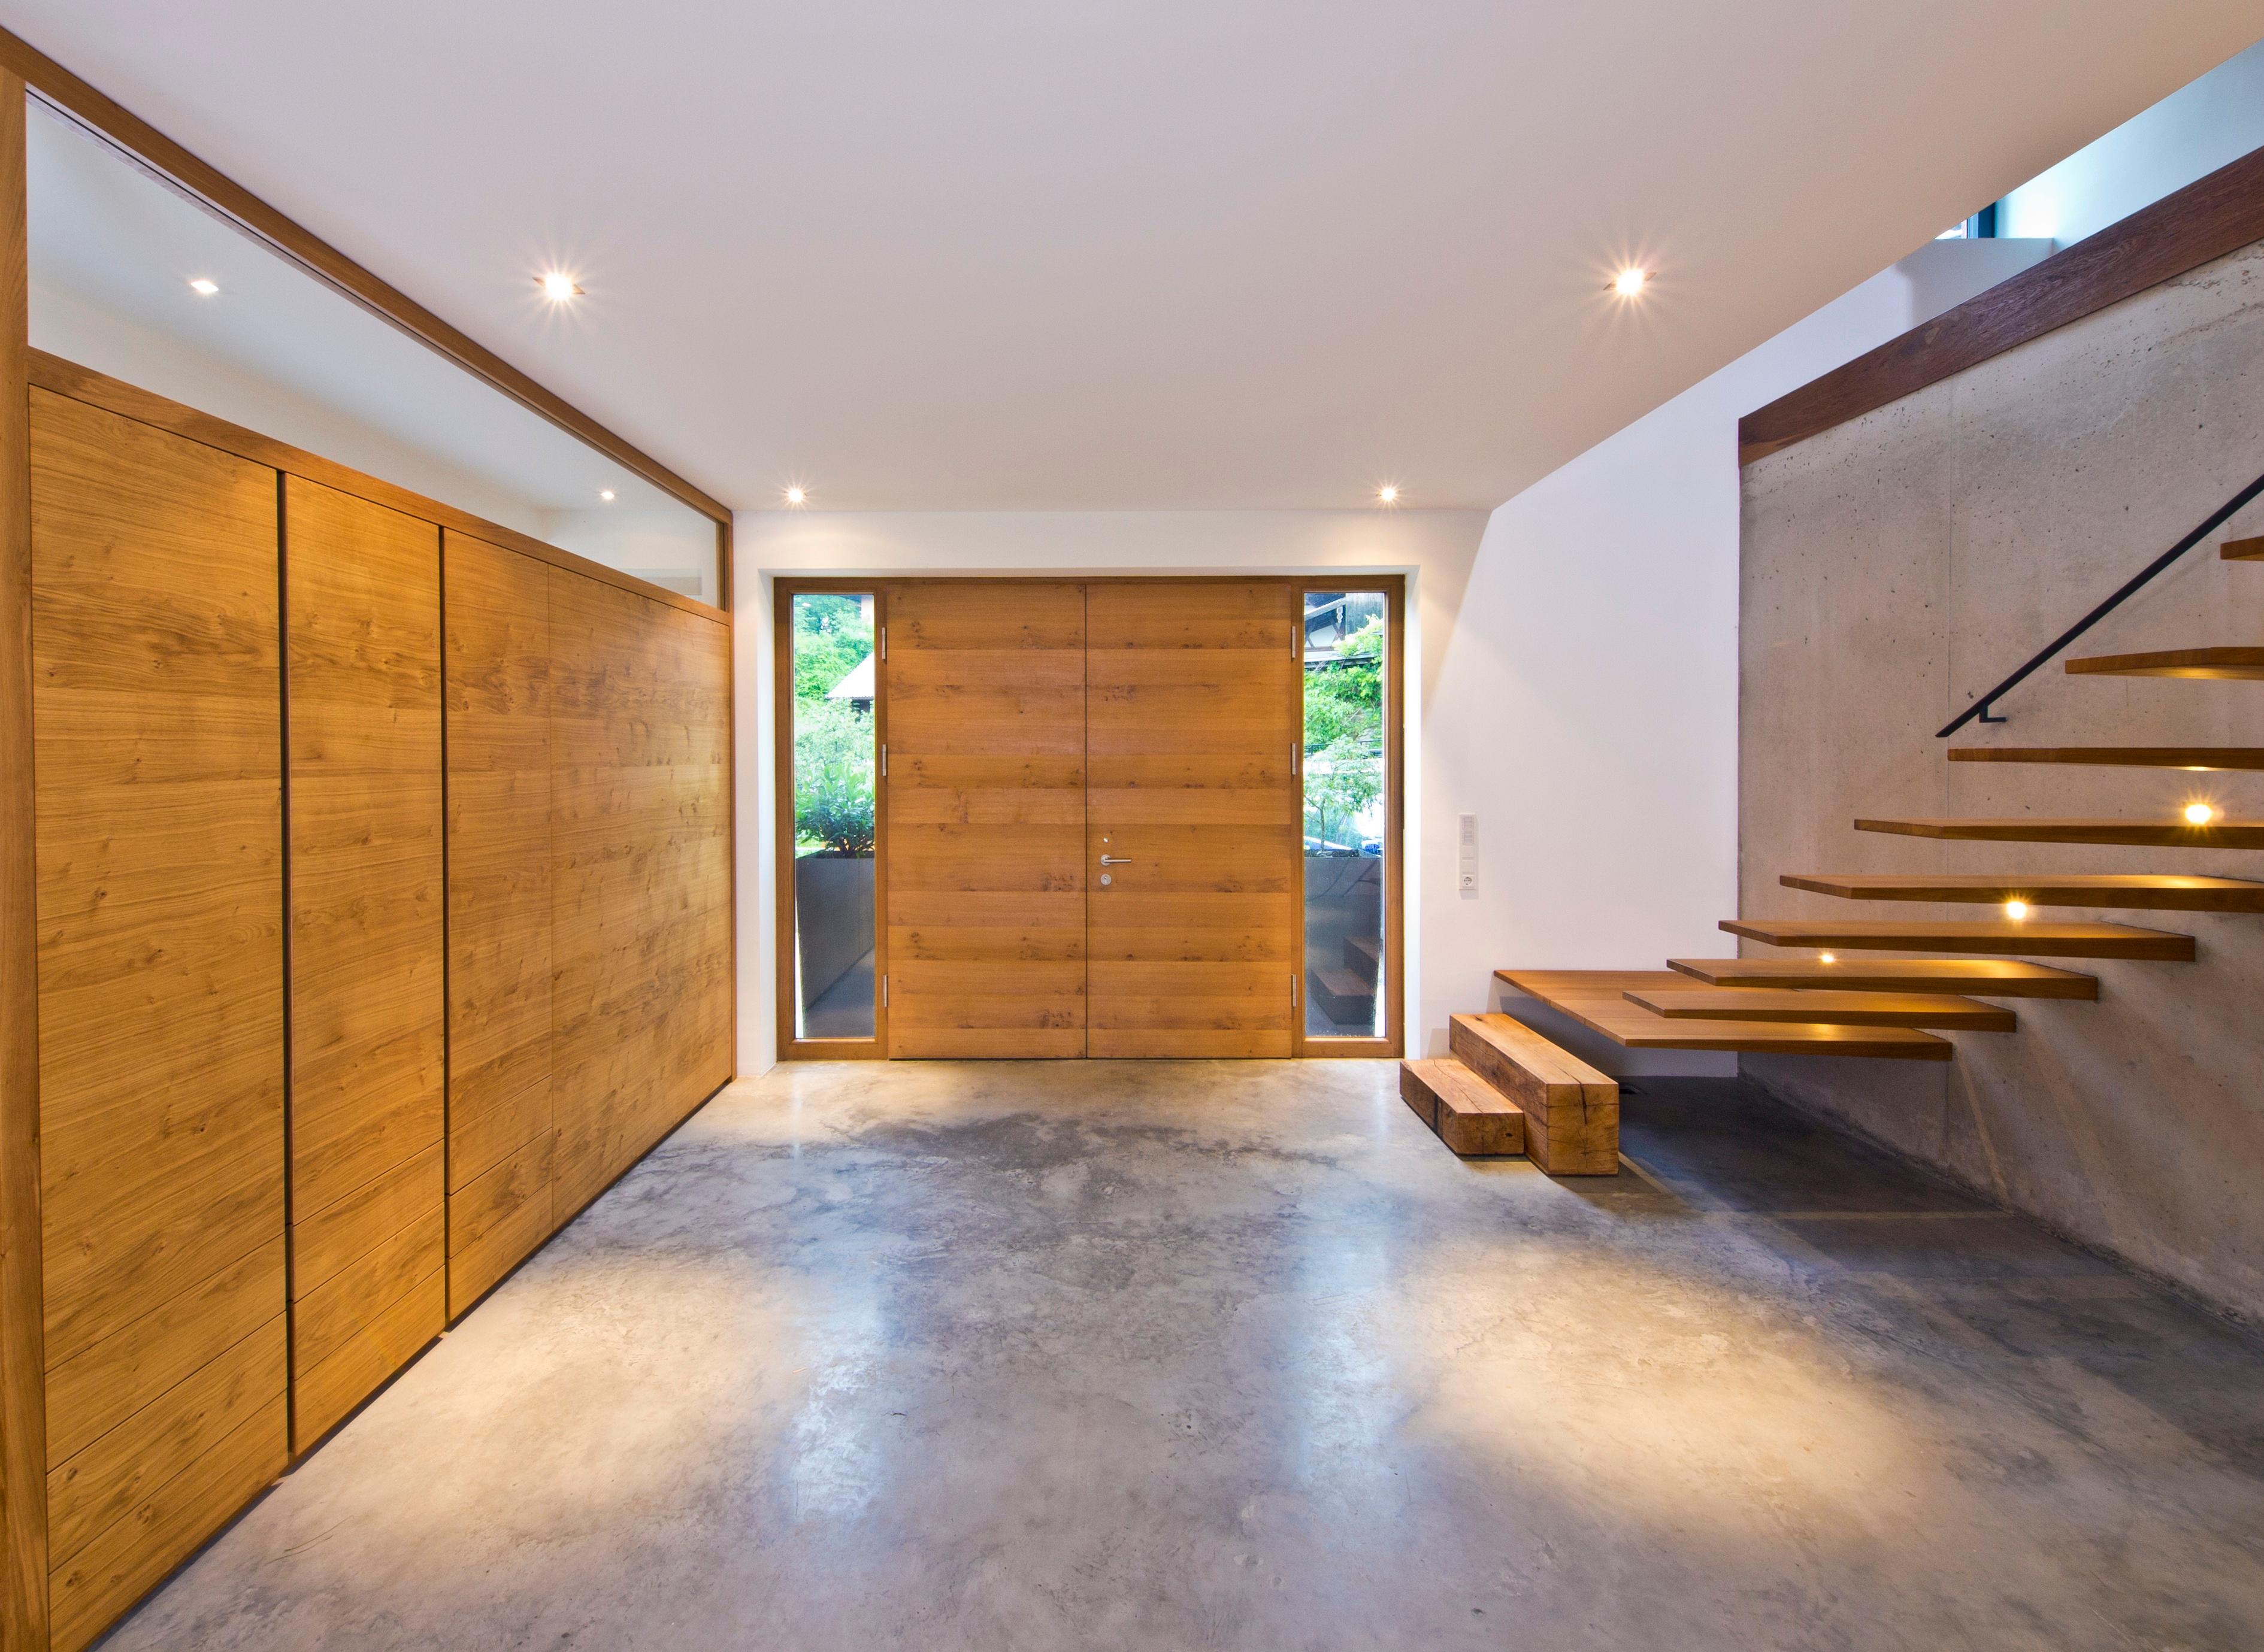 Haus Weitblick #betonboden #spotlicht #flurbeleuchtung ©Baufritz GmbH & Co. KG